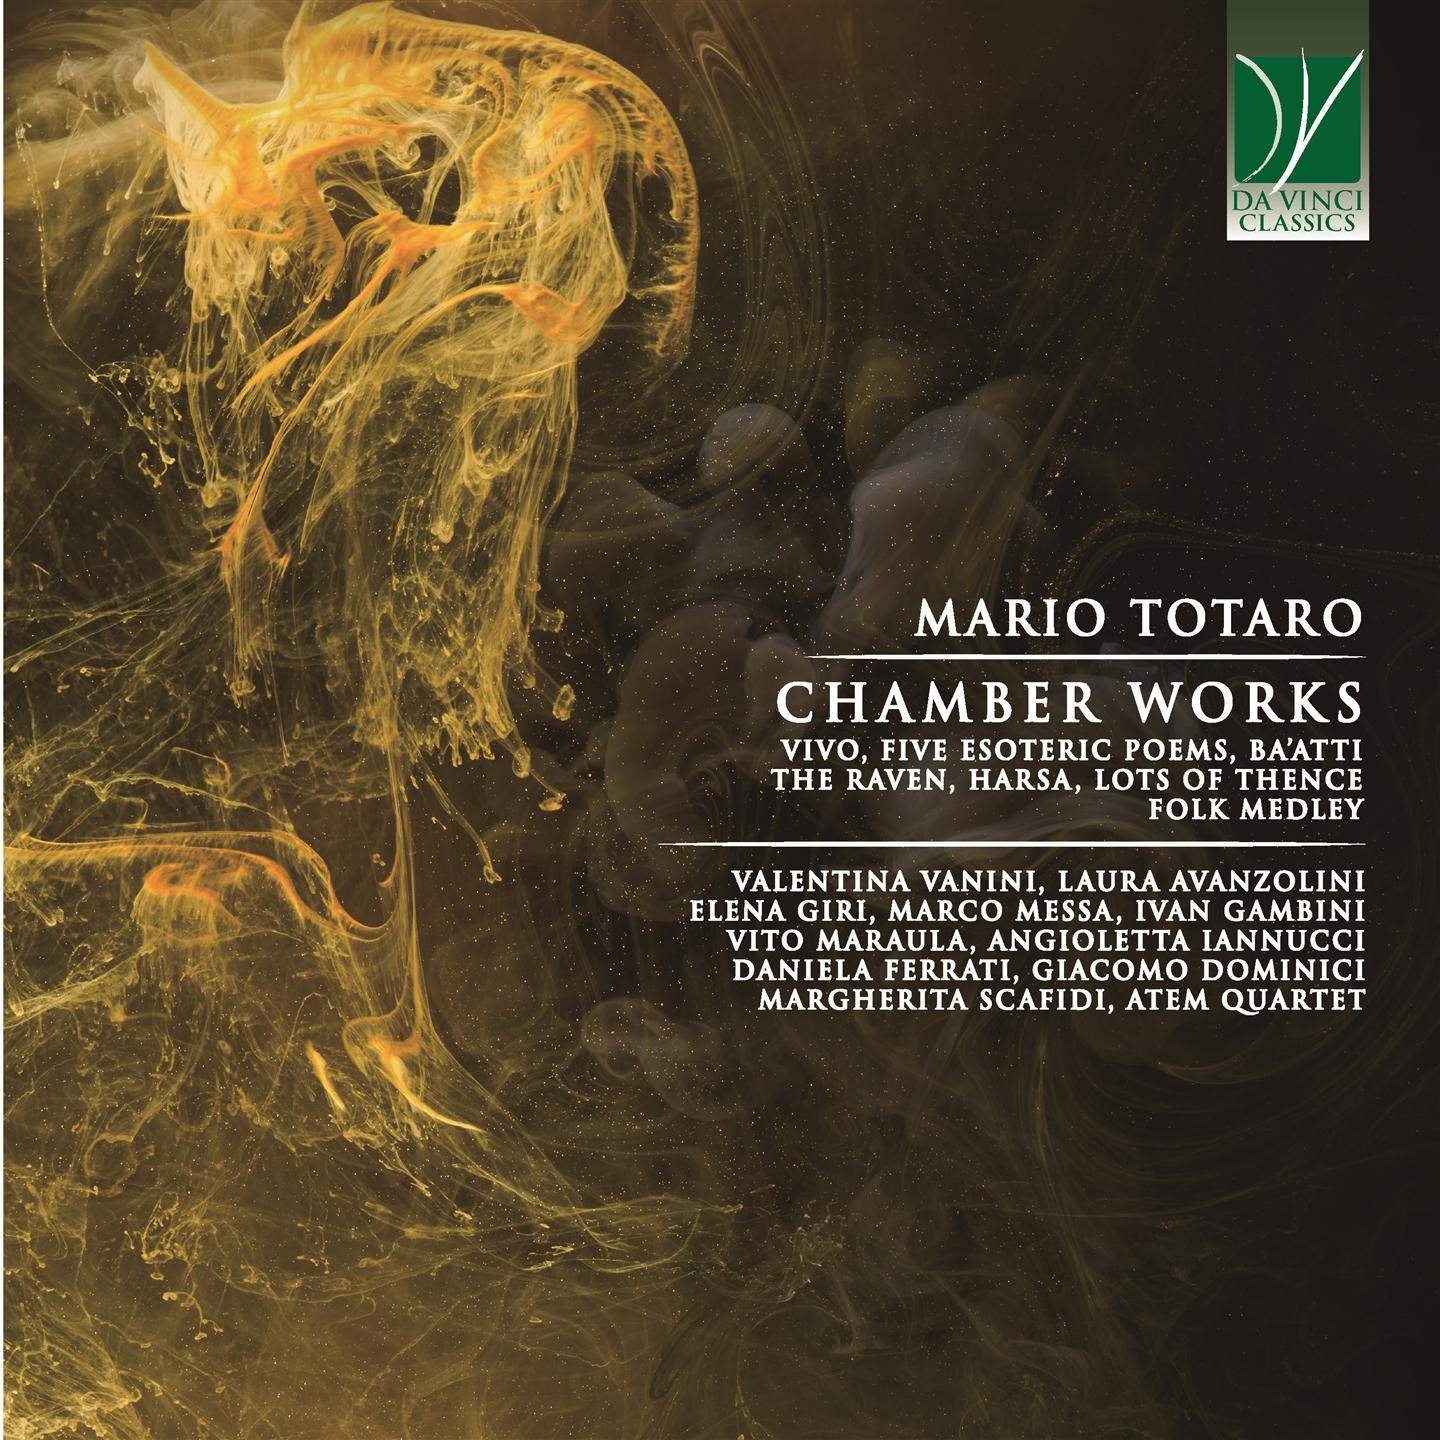 MARIO TOTARO: CHAMBER WORKS